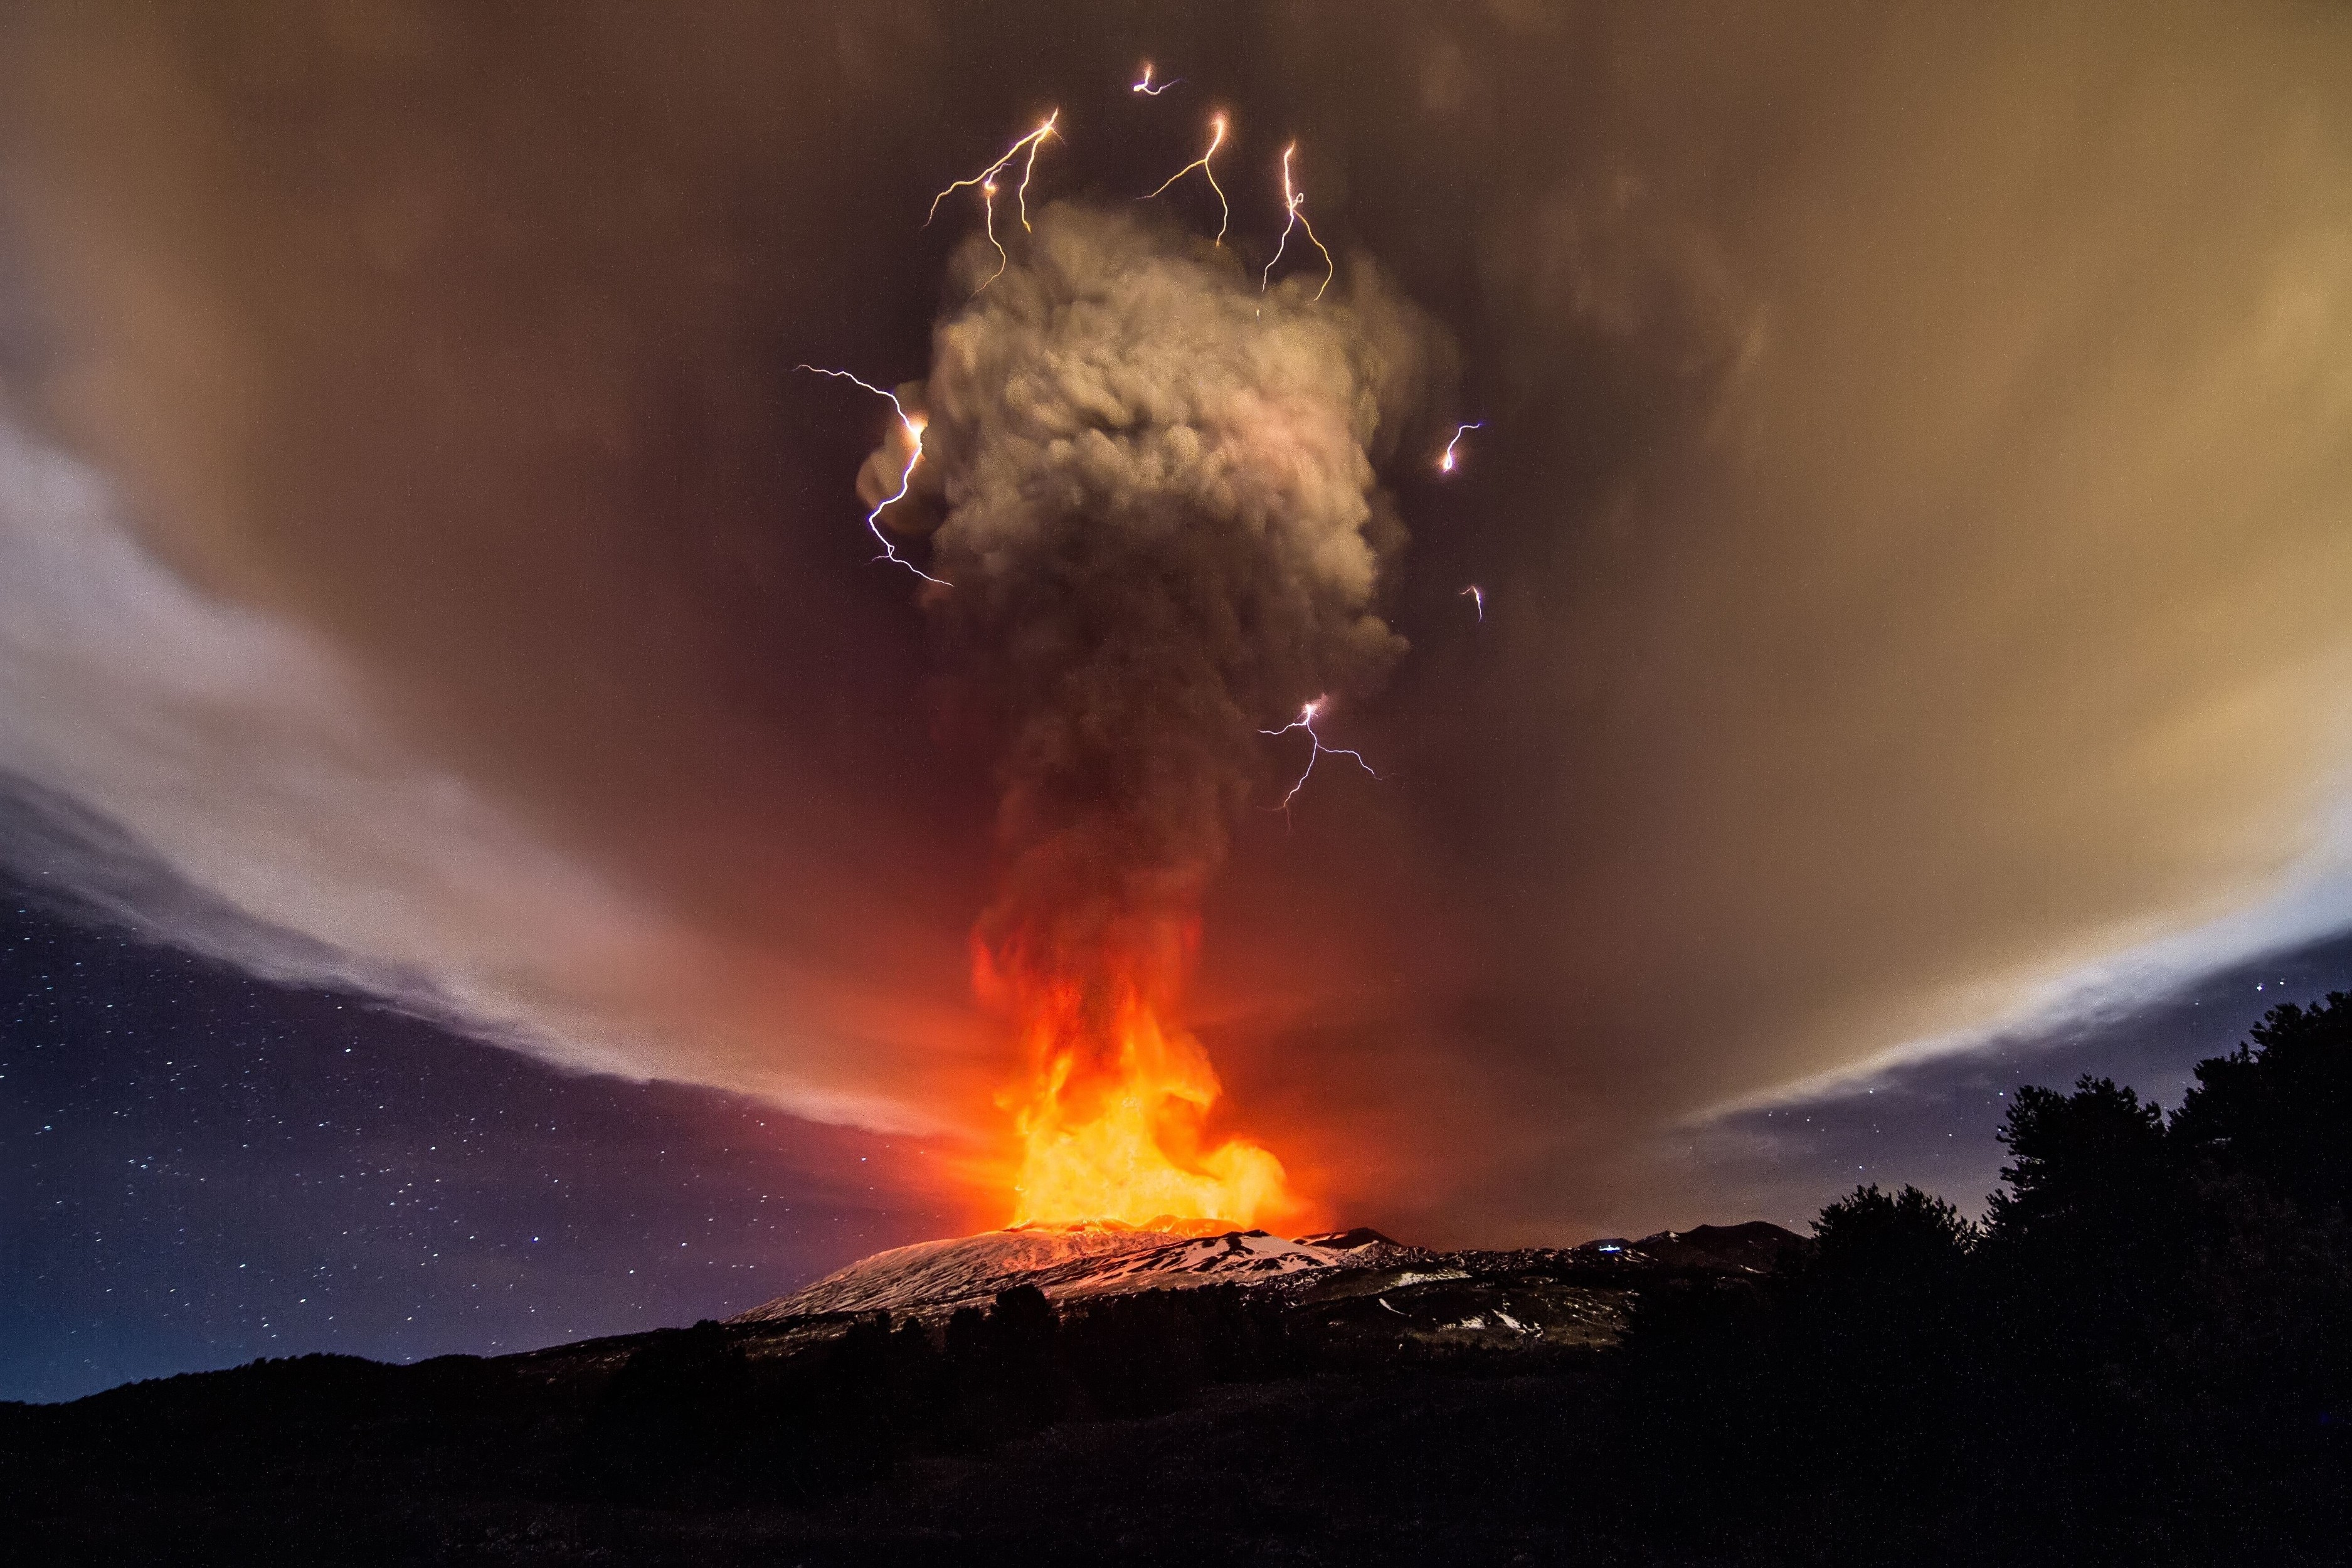 General 3750x2500 nature volcano eruptions smoke lightning landscape eruption sky